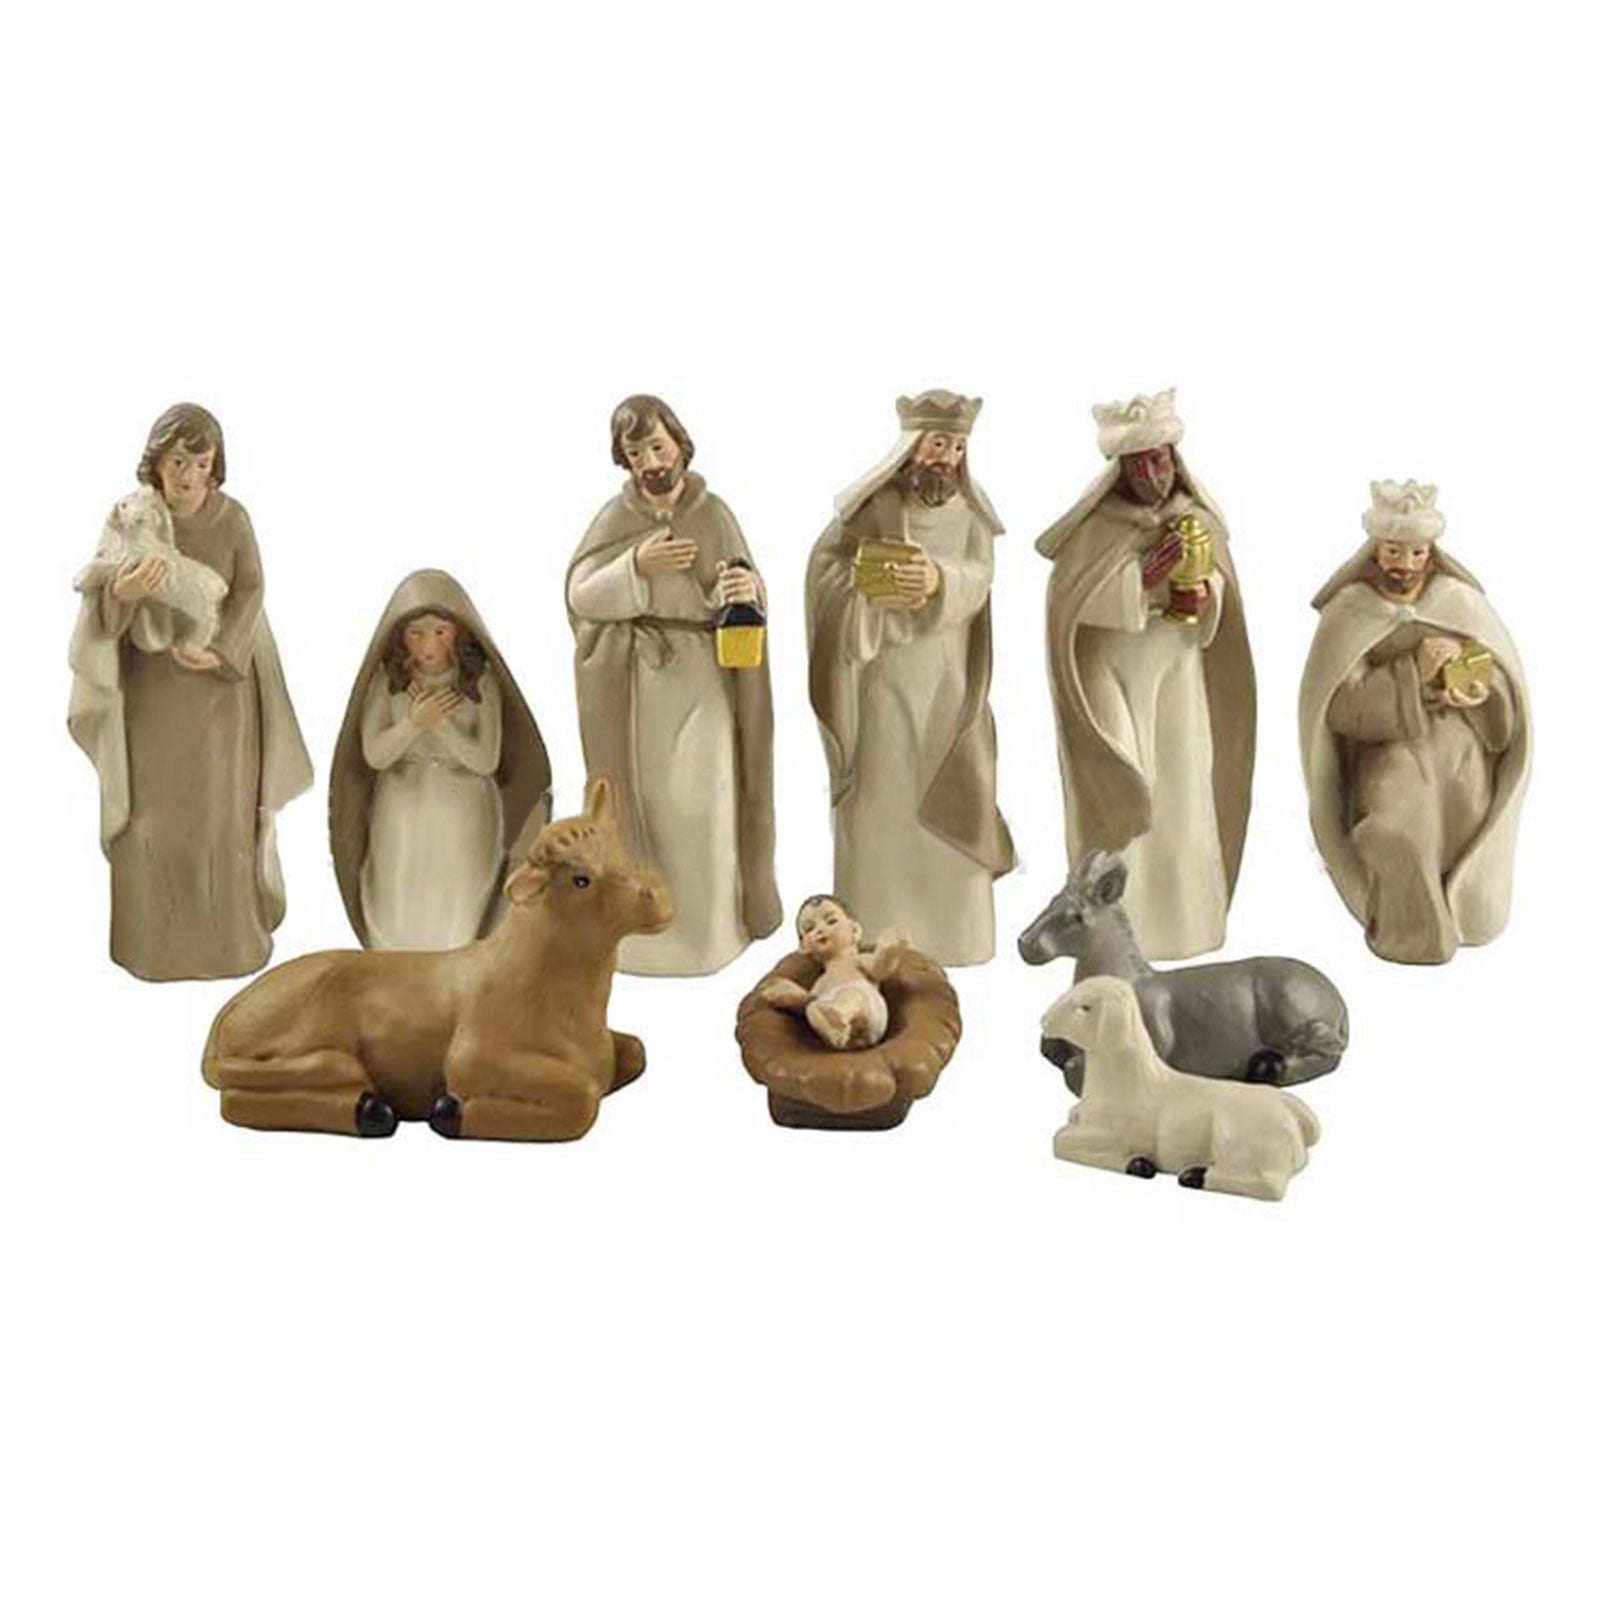 Christ of Christmas Nativity CUSTOM Porcelain Ornament Gift Religious 